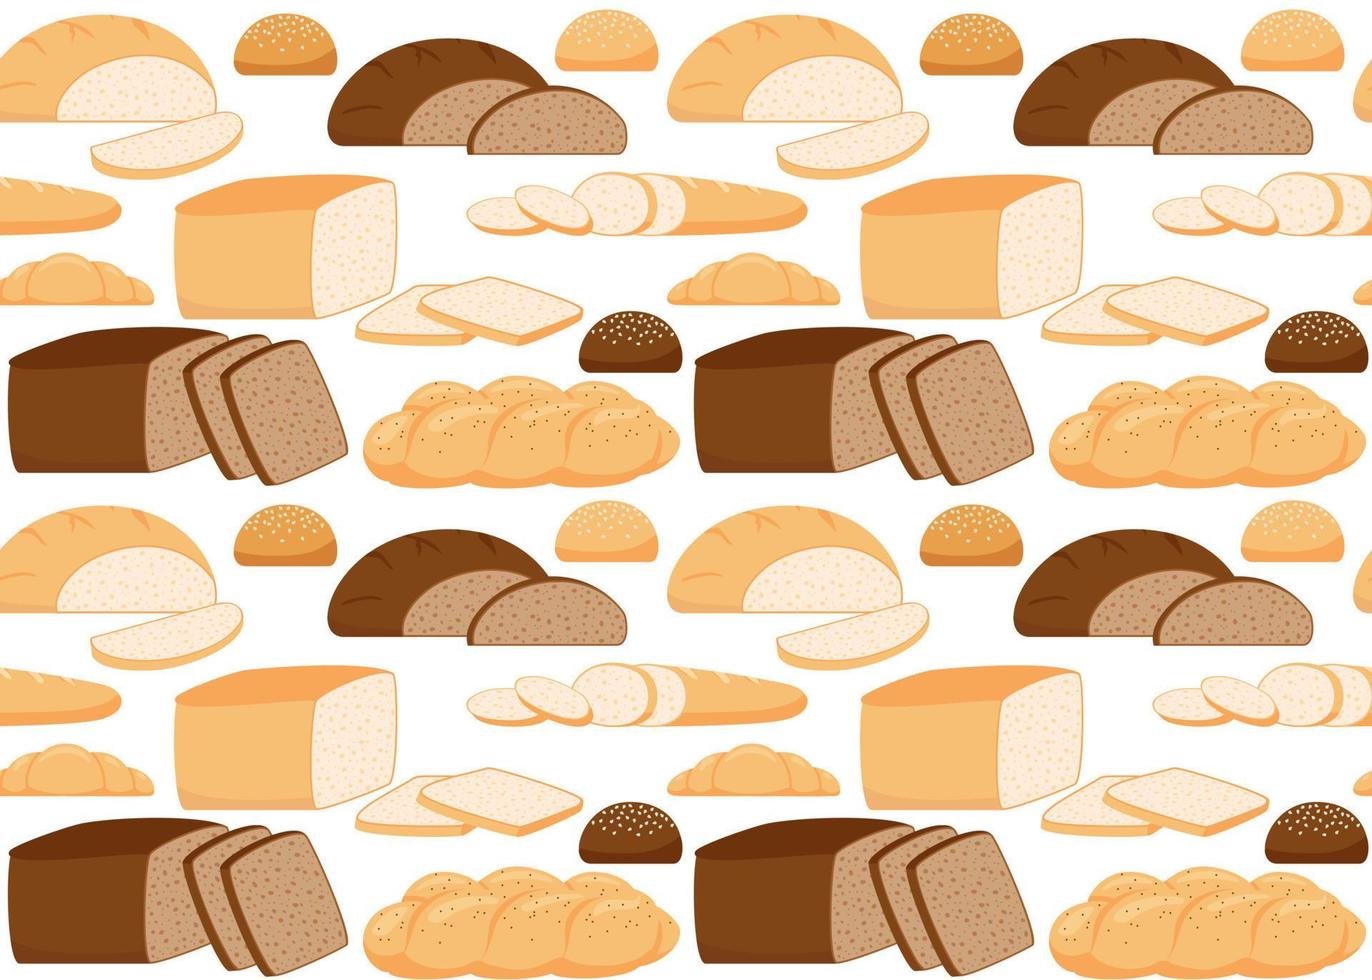 patrón de pan de hojaldre de trigo, grano entero y centeno, comida de panadería, bollo. fondo transparente con pan, ladrillo de pan, croissant, pan tostado, baguette francesa, jalá. ilustración vectorial vector